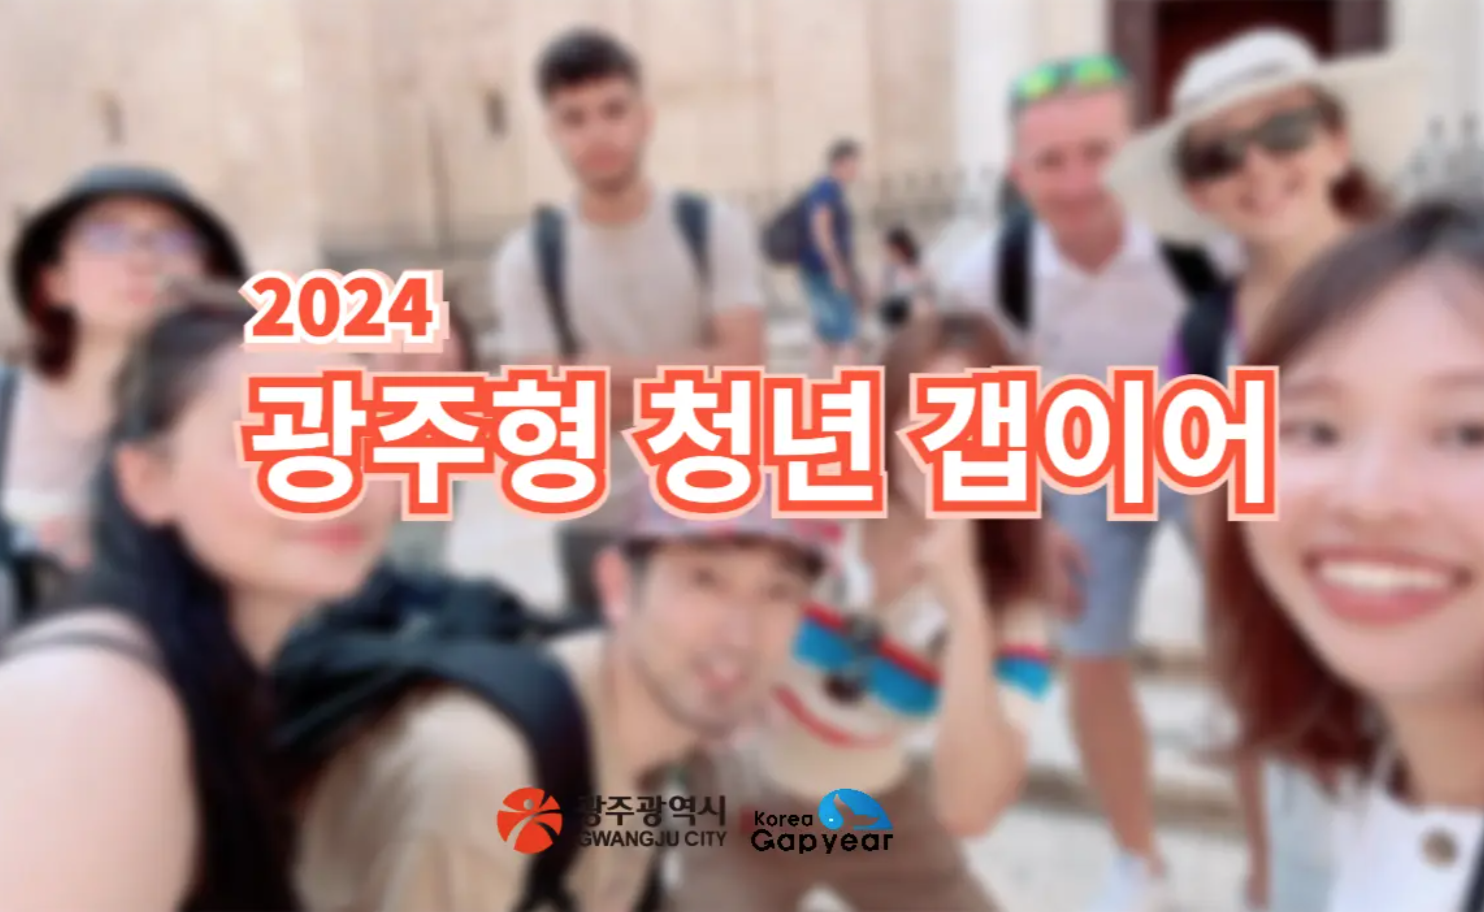 ✈️ 광주 청년들을 위한 갭이어 기회! 2024년 광주형 참가자 모집